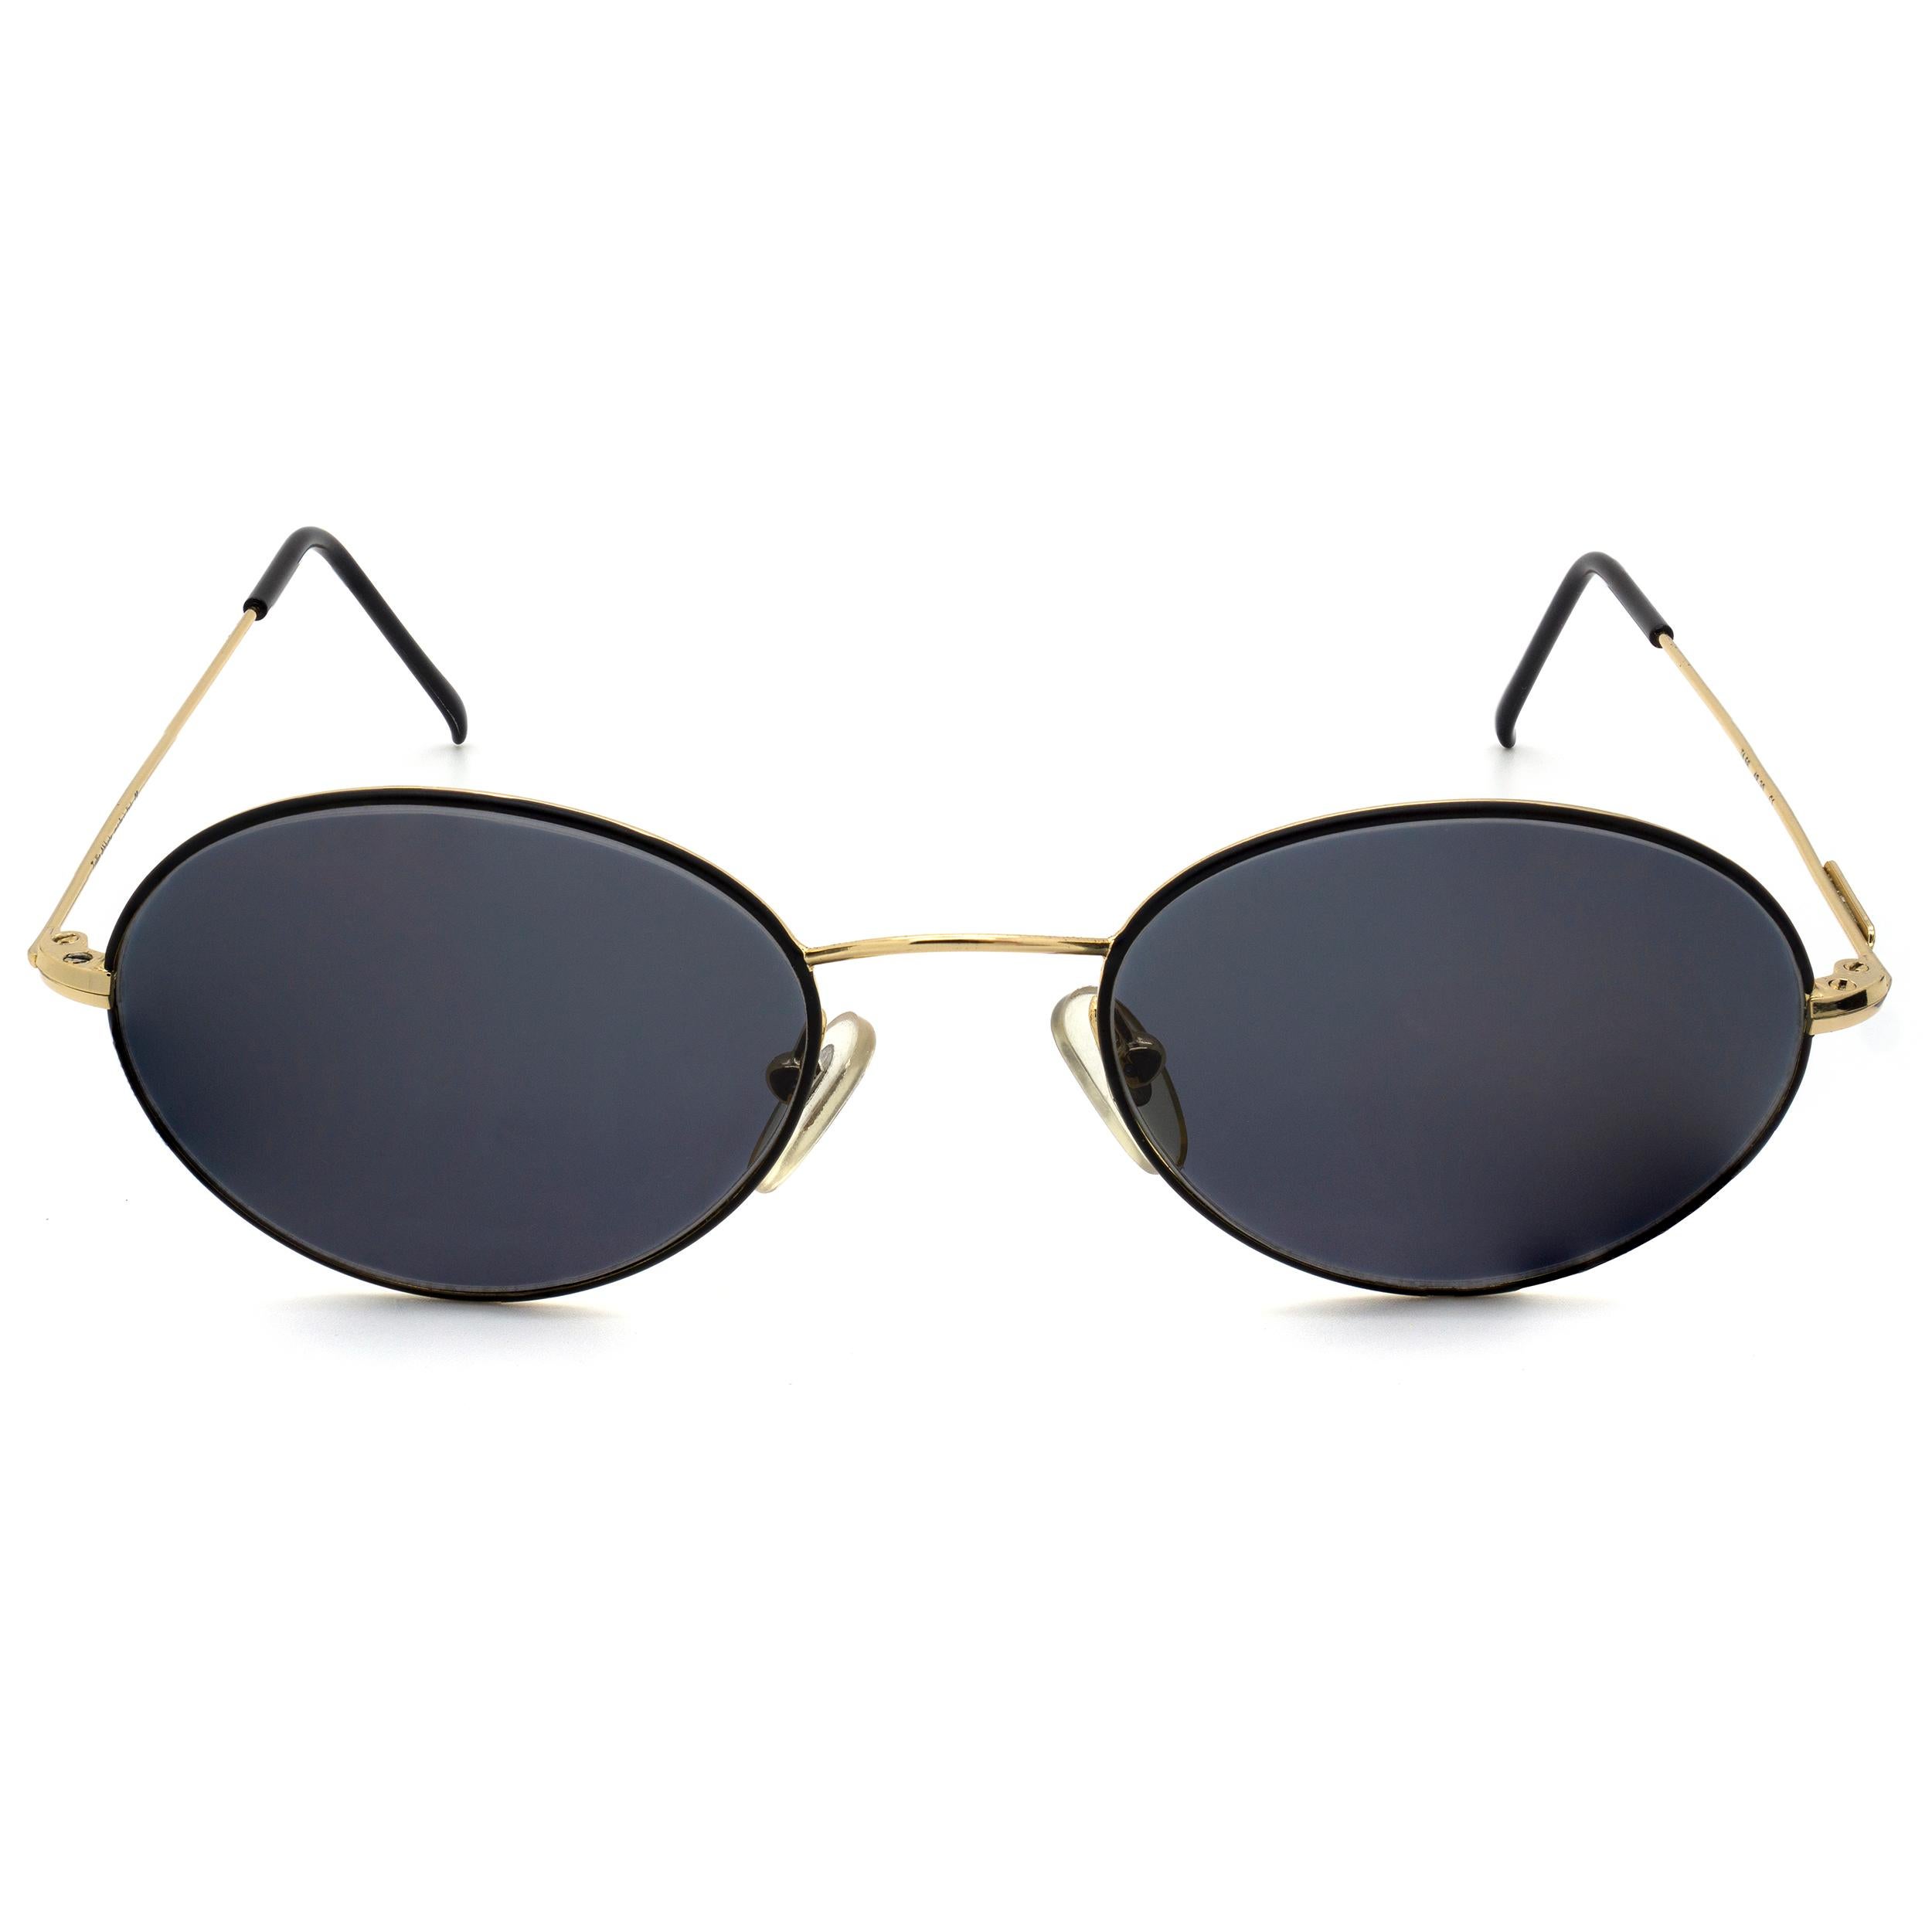 Tullio Abbate vintage sunglasses In New Condition For Sale In Santa Clarita, CA